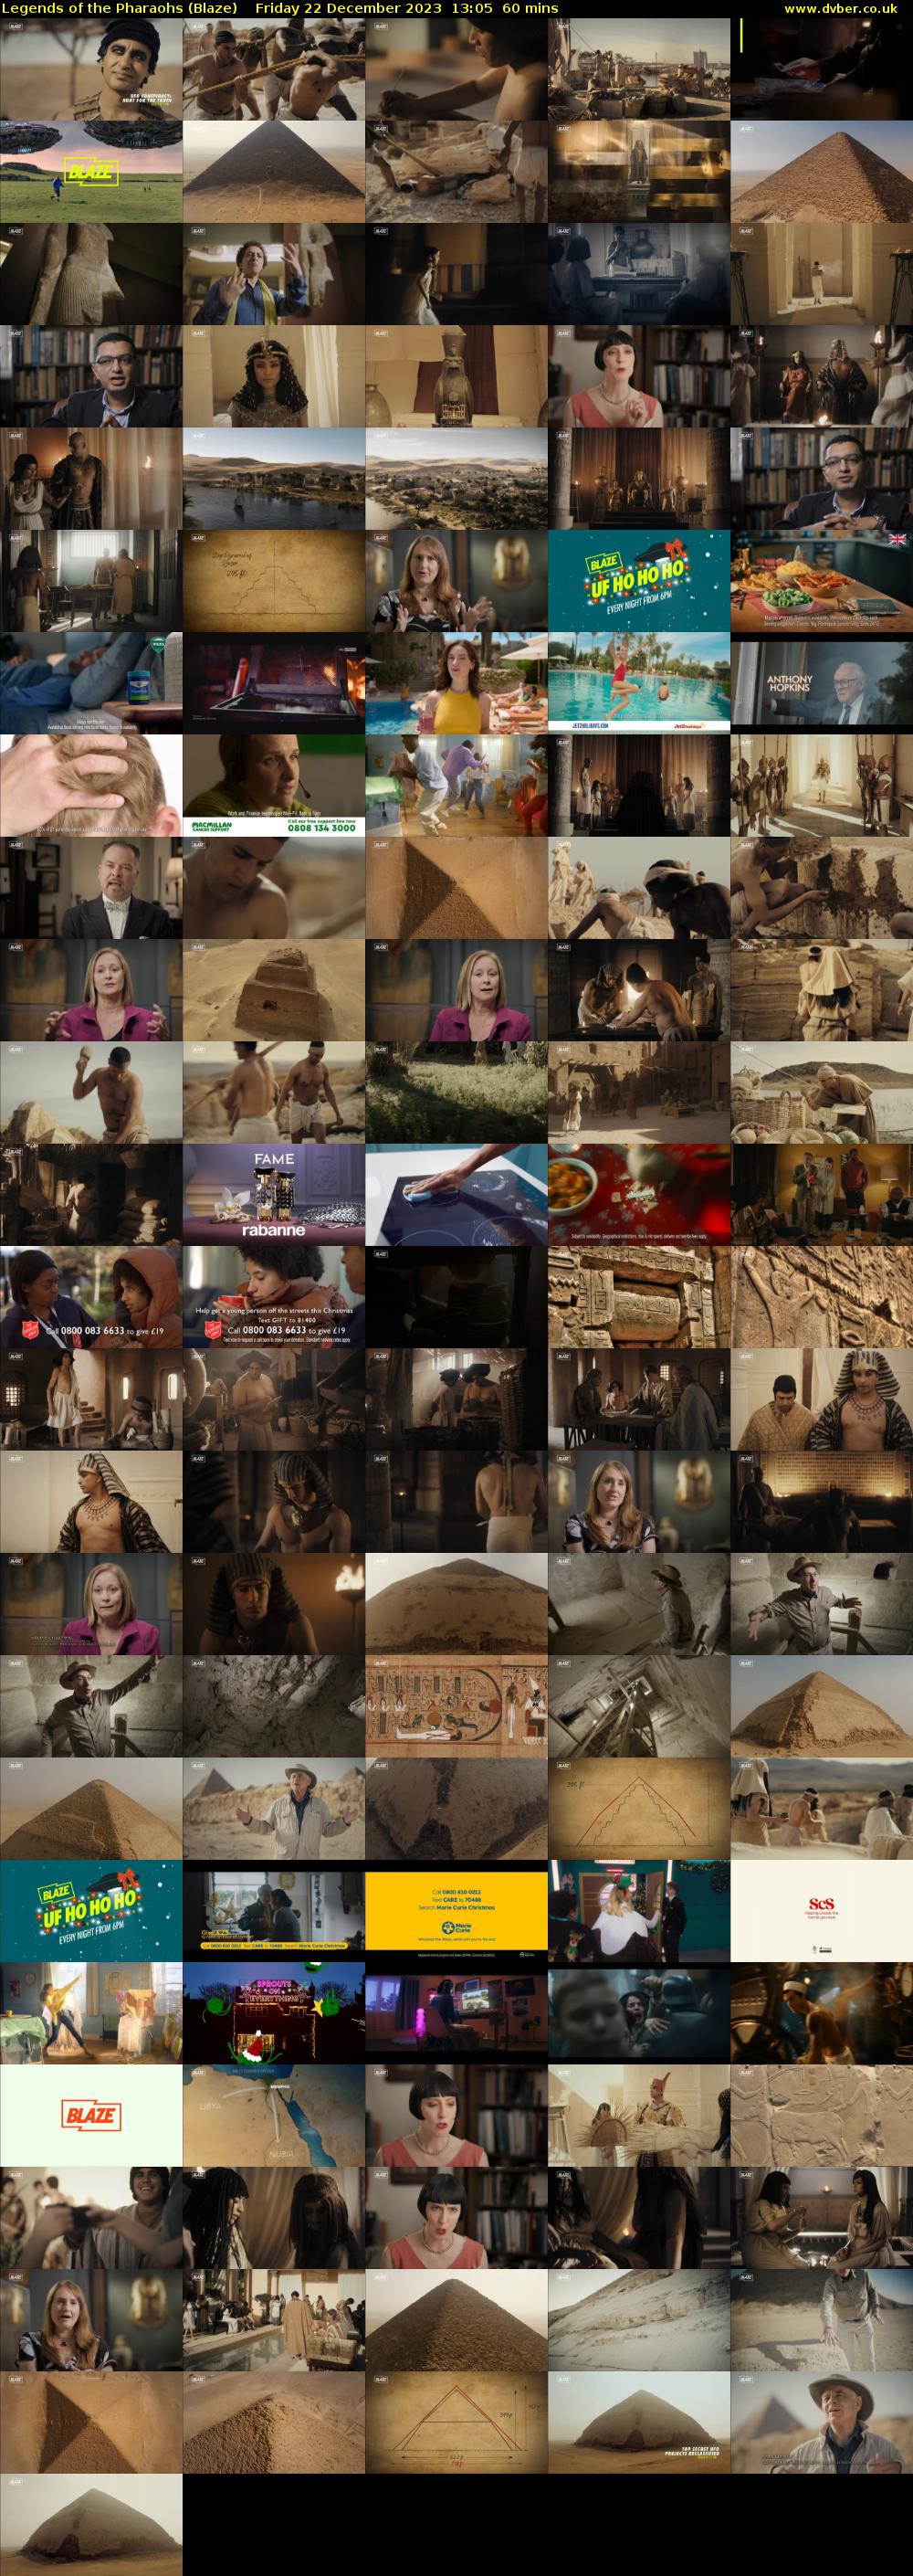 Legends of the Pharaohs (Blaze) Friday 22 December 2023 13:05 - 14:05